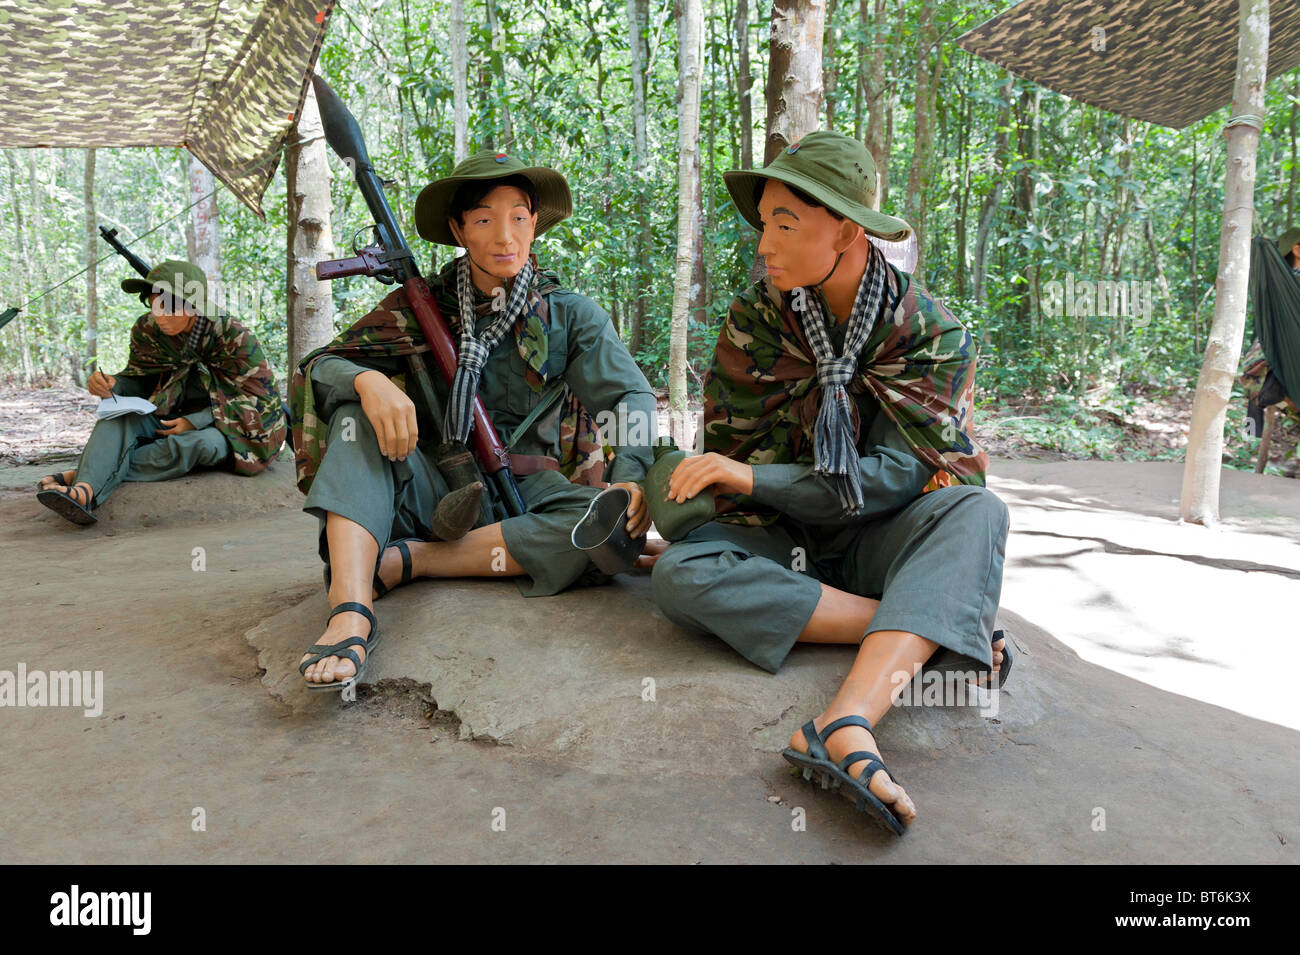 Affichage de mannequins Viet Cong typique de vêtements de combat, d'armes et d'équipement. Complexe Tunnel de Cu Chi, Ho Chi Minh City, Vietnam Banque D'Images